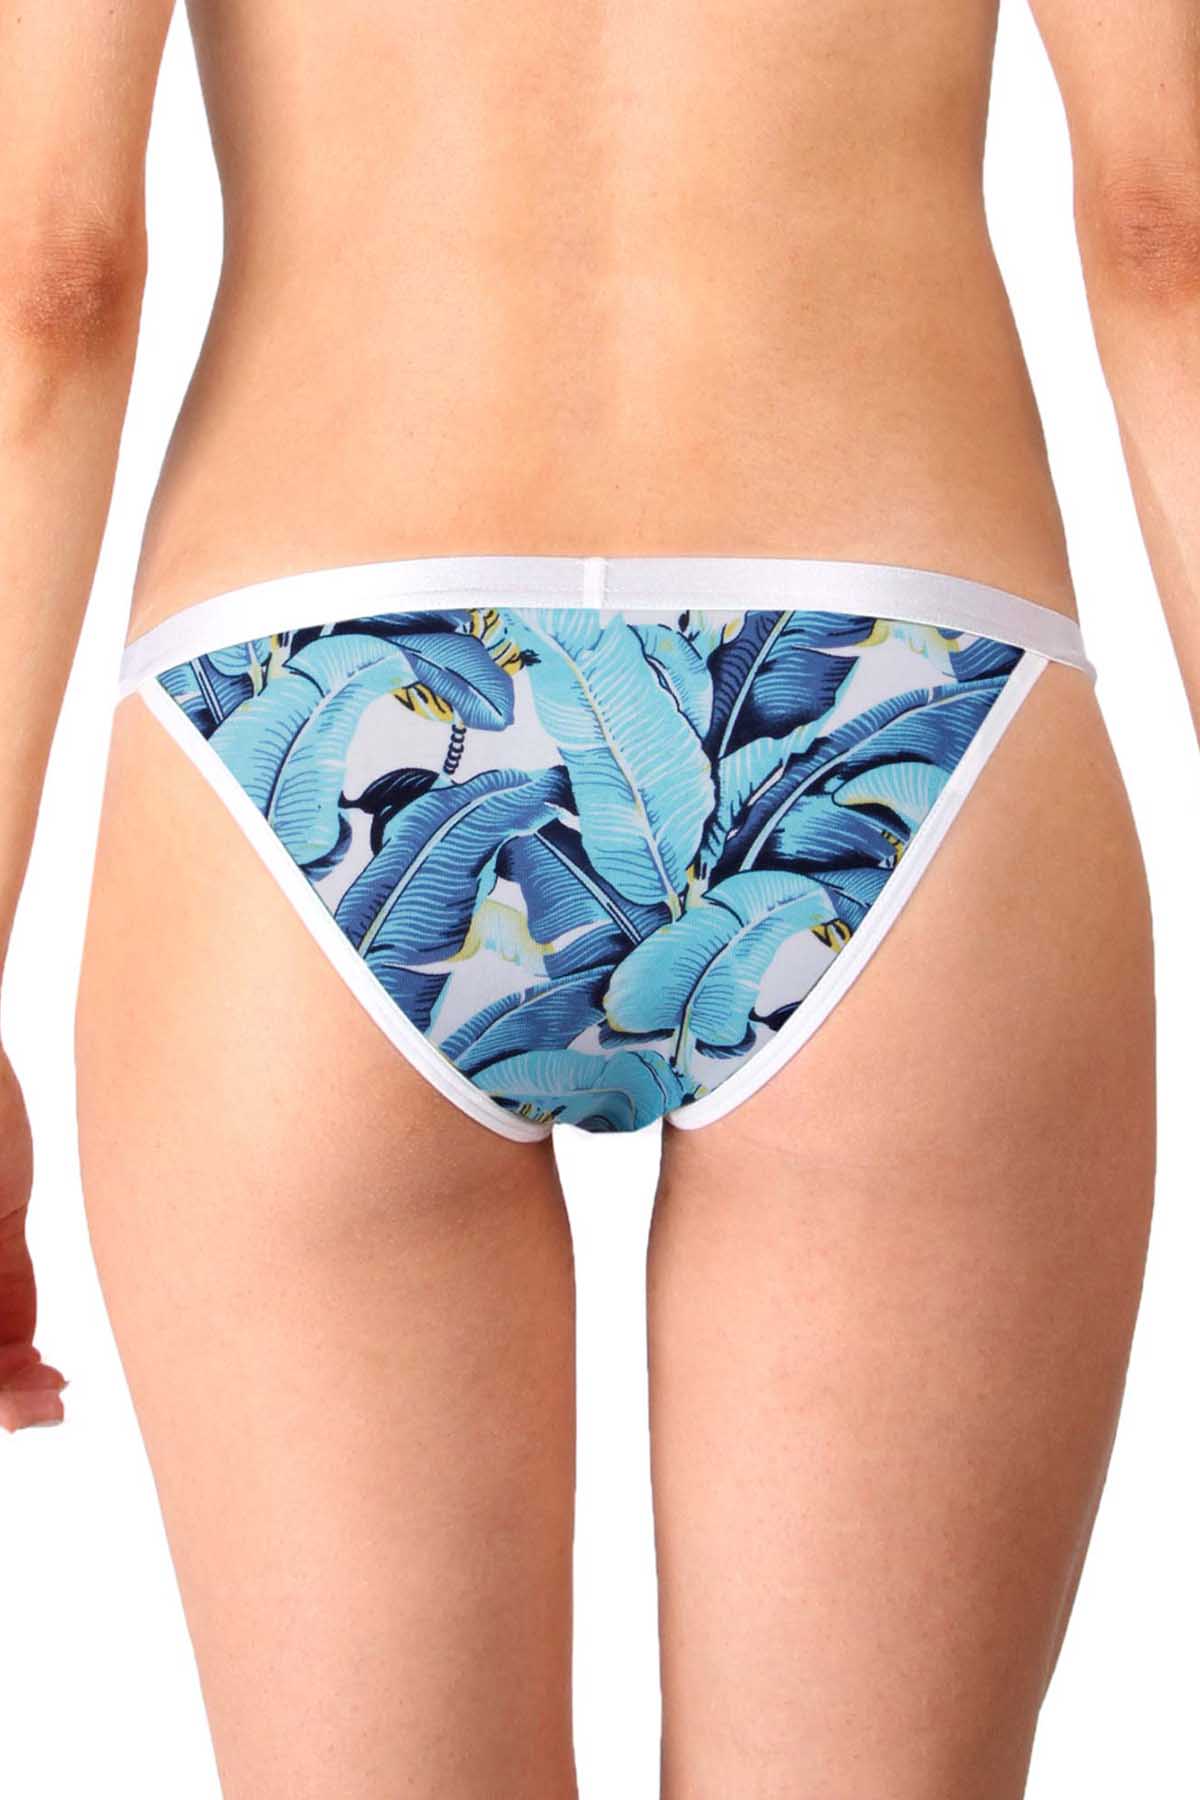 Mosmann Blue Congo String Bikini Panty